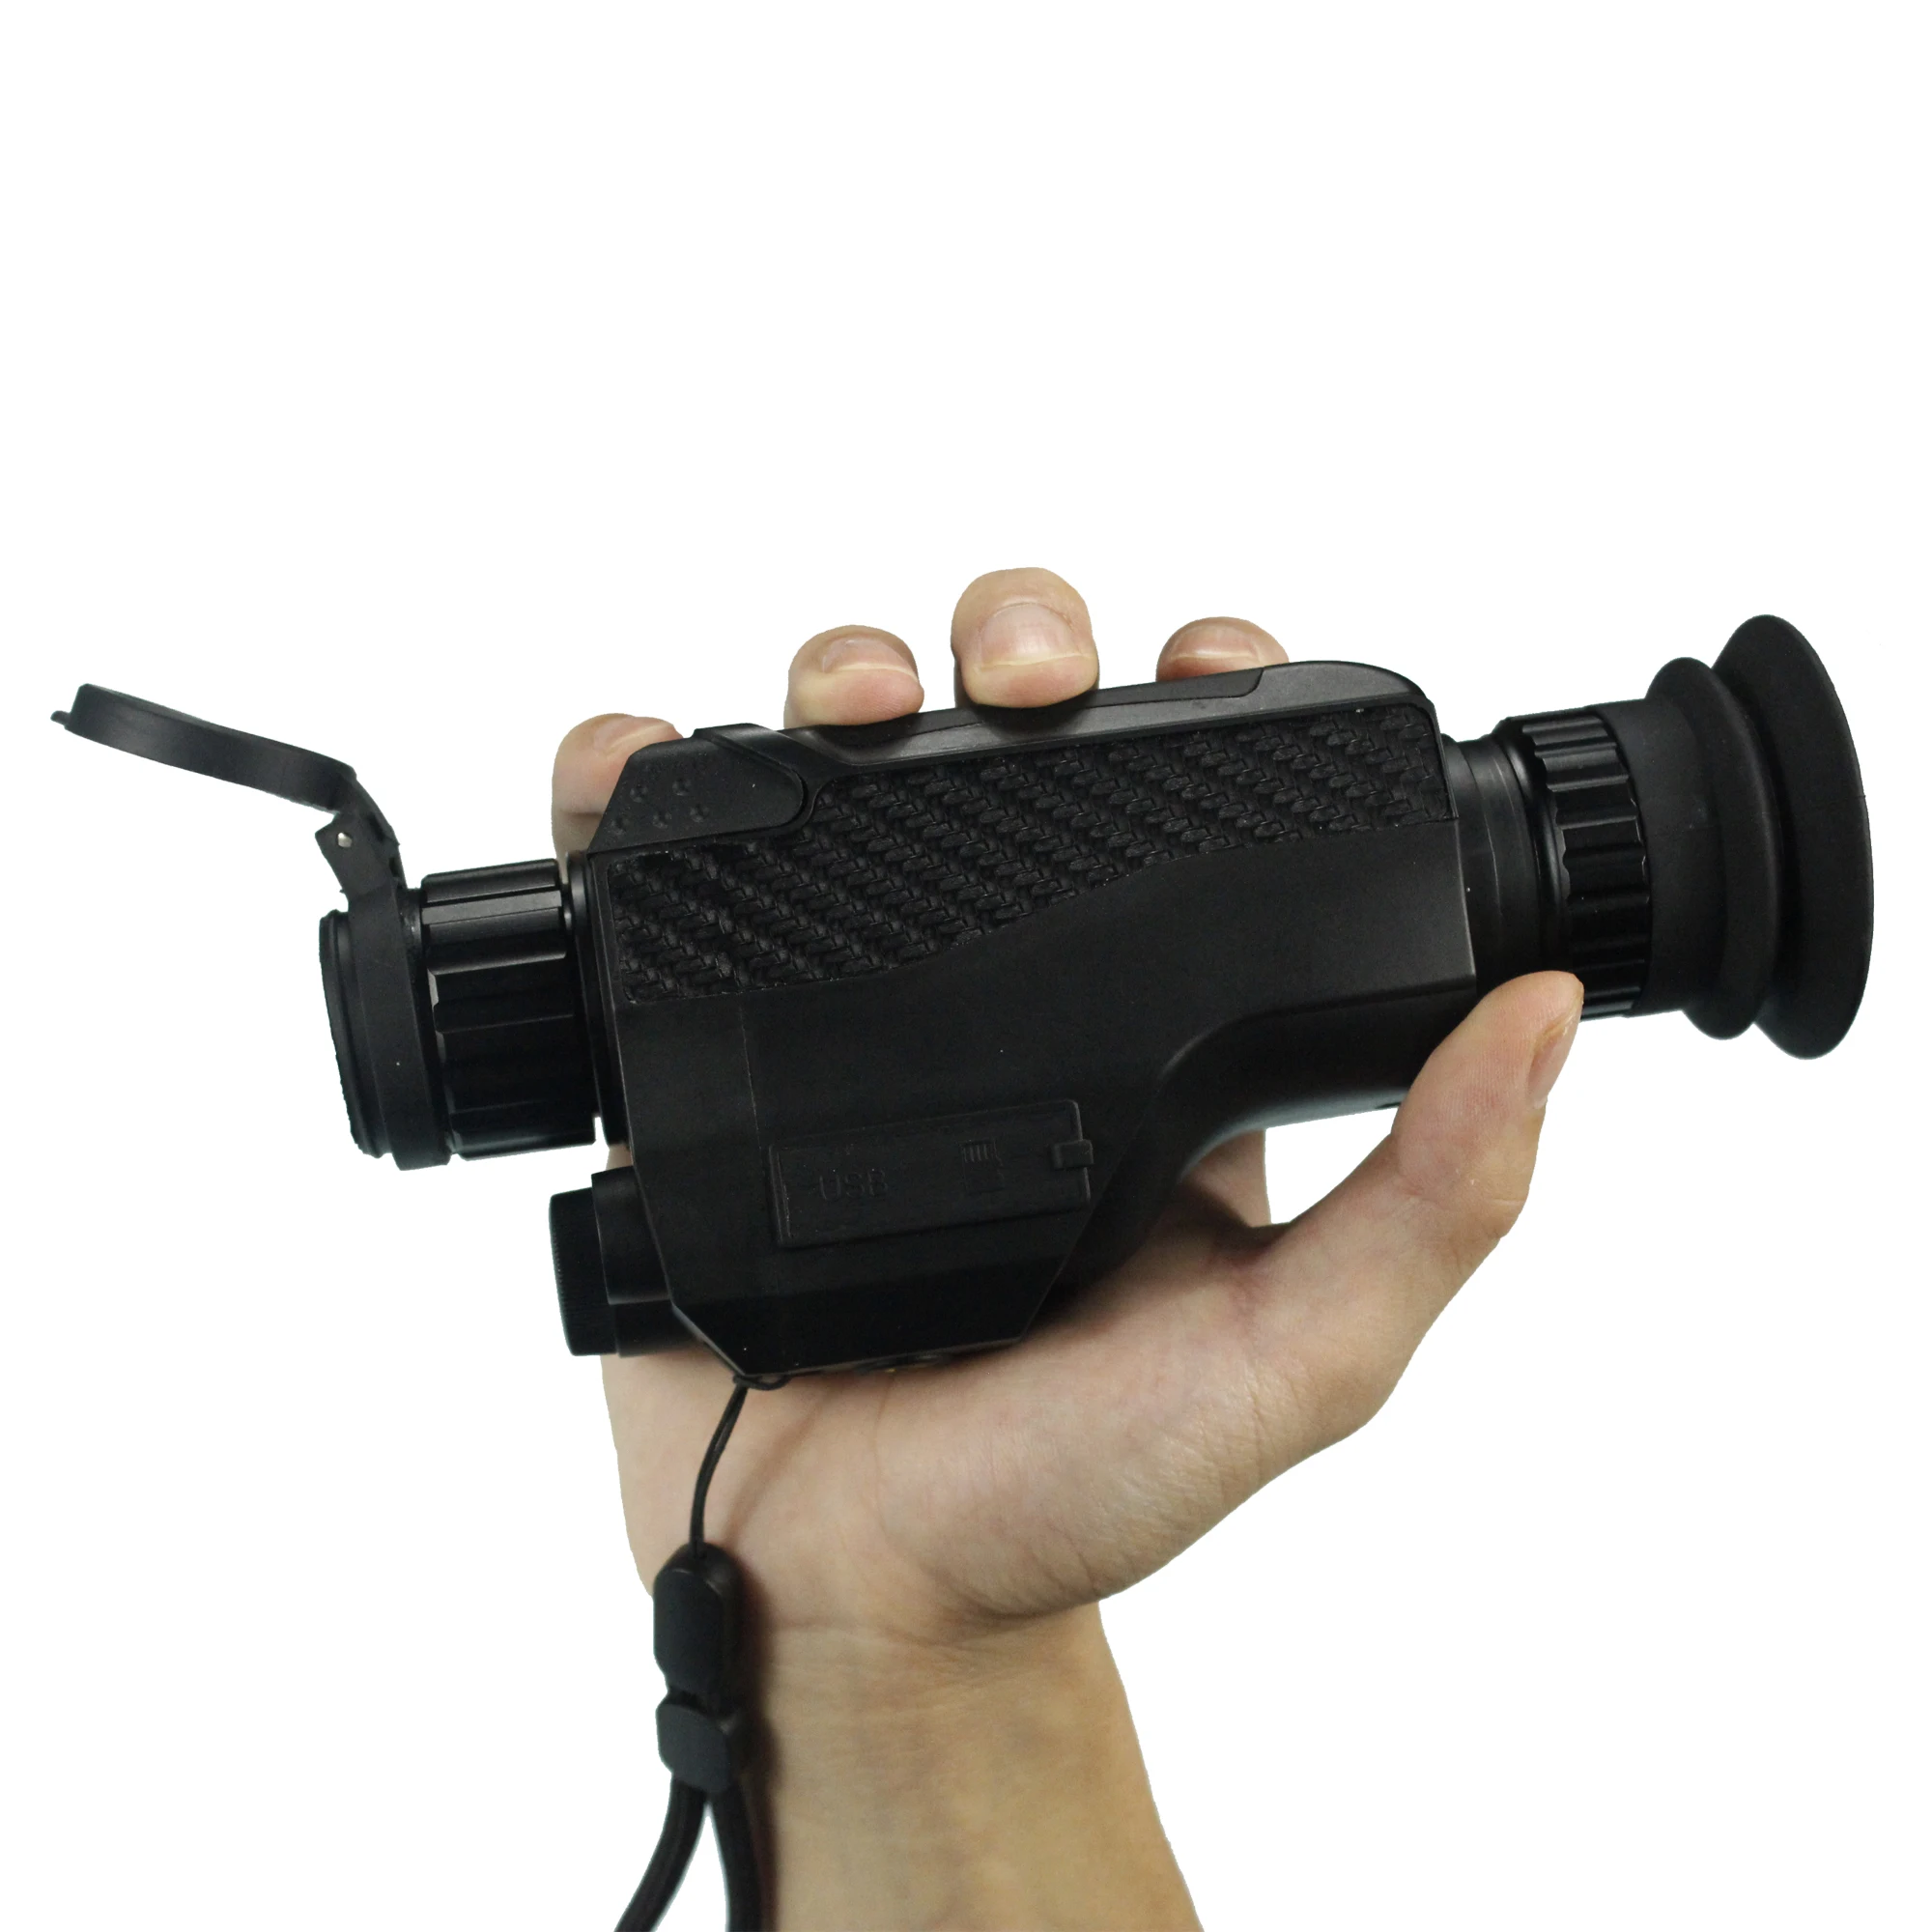 

Монокуляр ночного видения WELLWIN 4x32, цифровые HD оптические приборы ночного видения, поддержка фотографий, бинокль